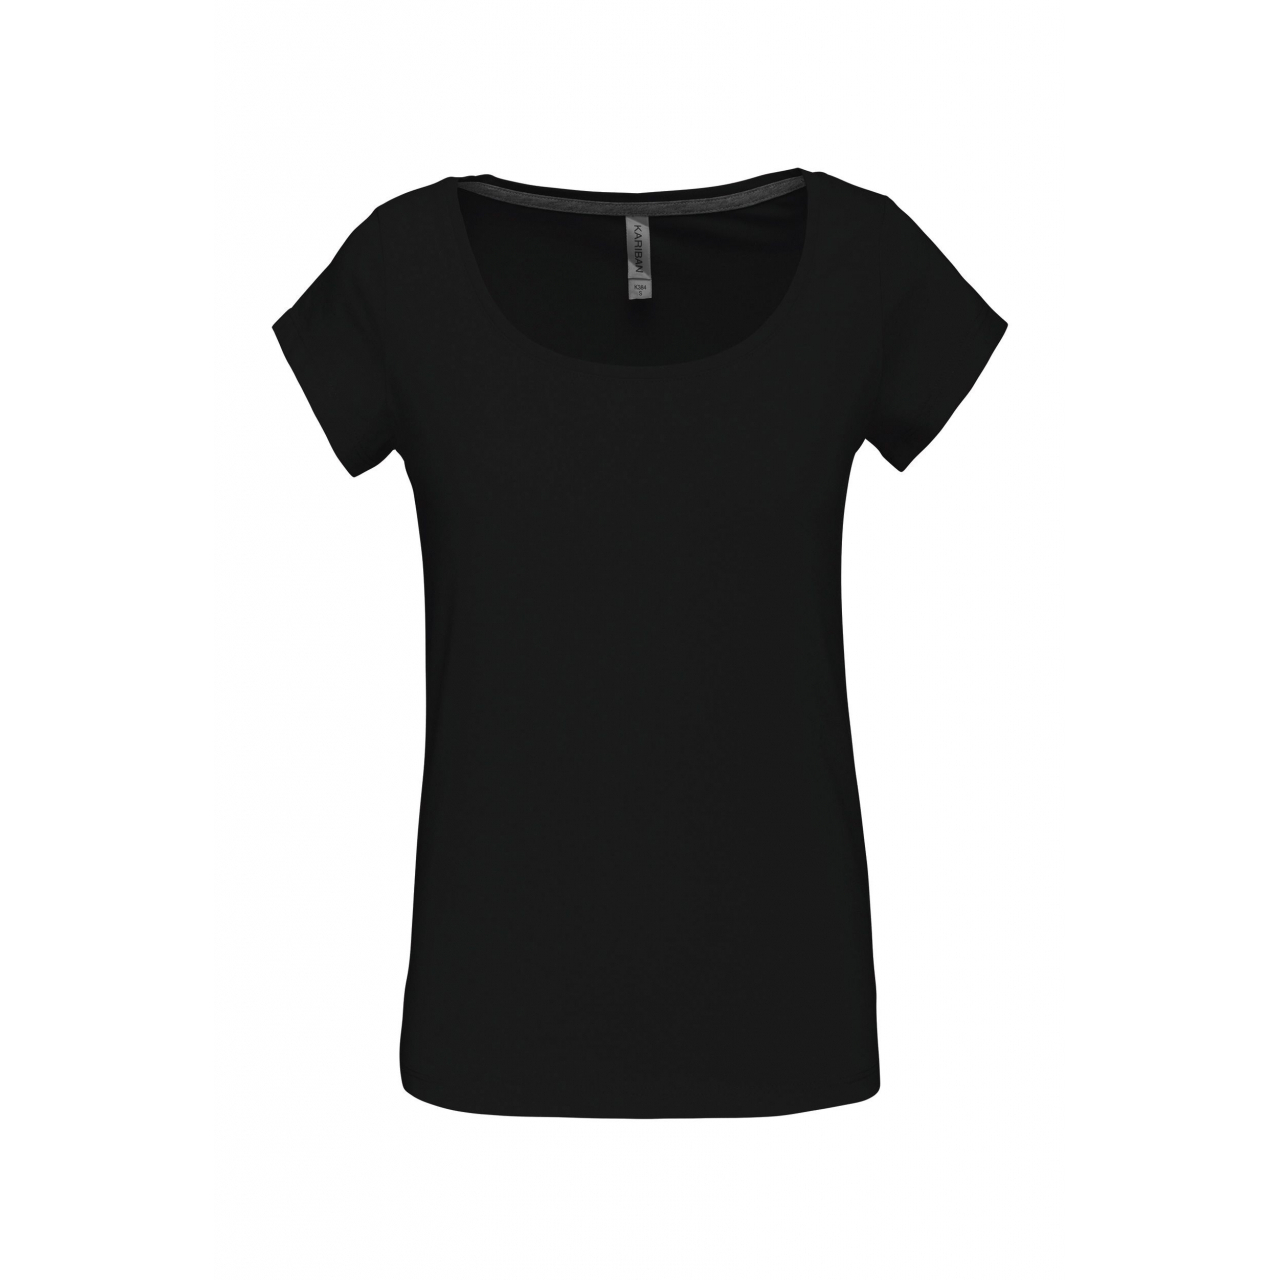 Dámské tričko Kariban s lodičkovým výstřihem - černé, L